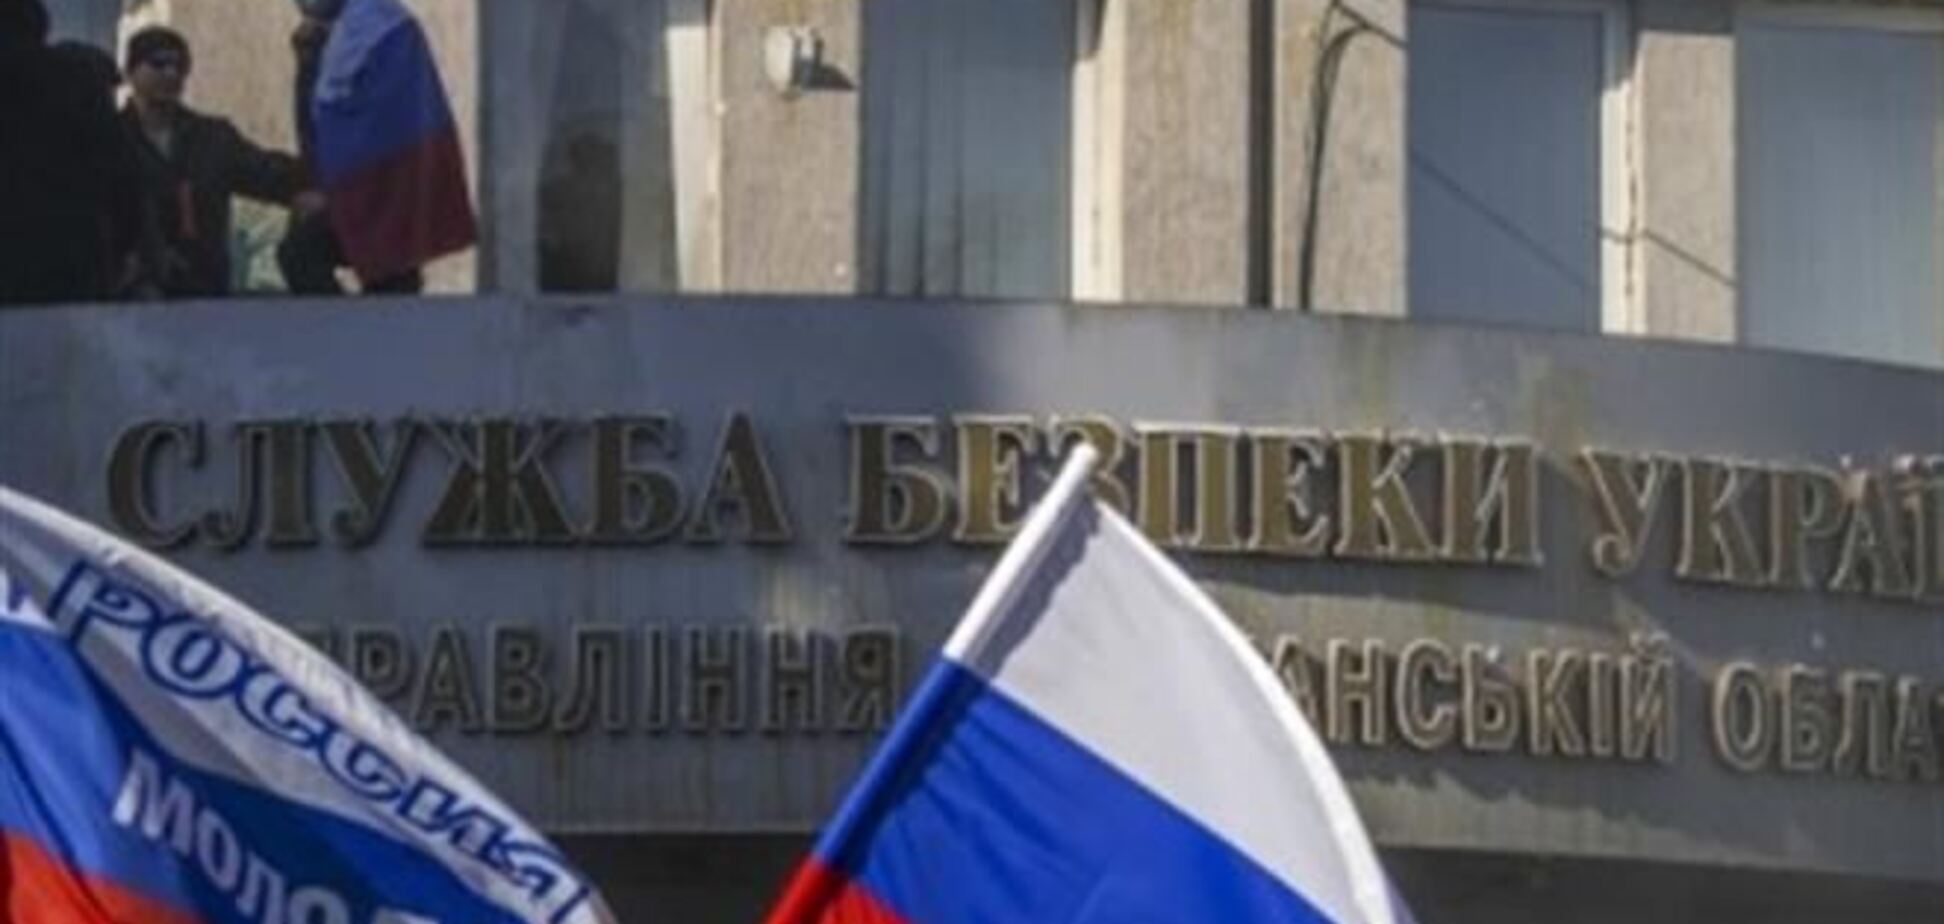 Захватчики СБУ в Луганске согласились на переговоры с властями - депутат